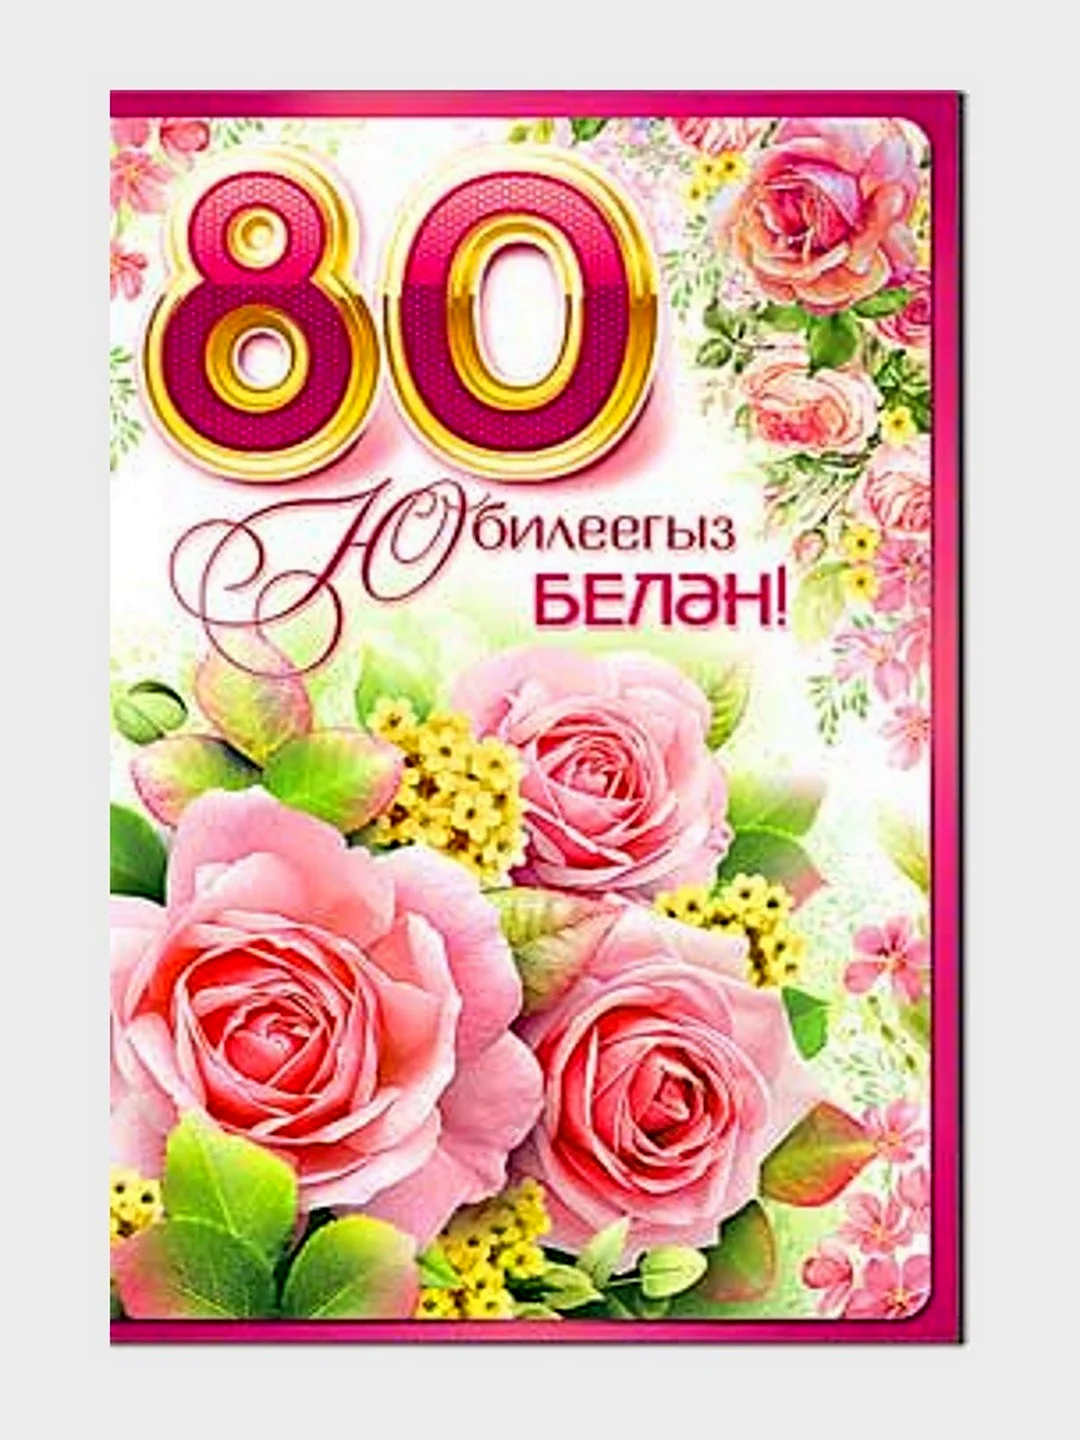 Юбилей 80 лет на татарском. Открытка с поздравлением